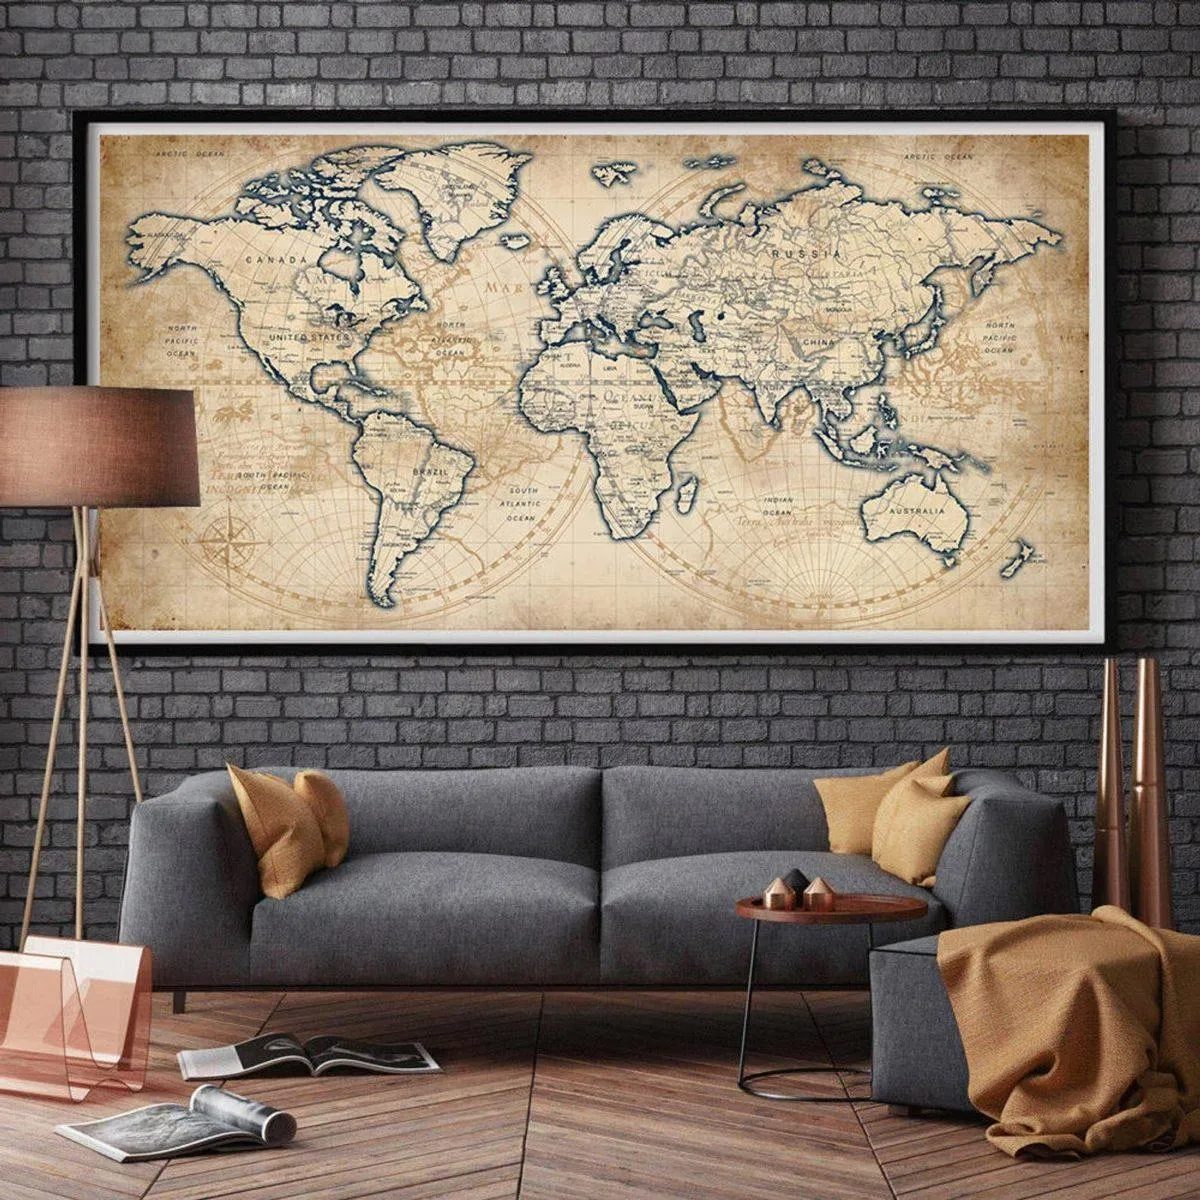 Географическая карта над диваном